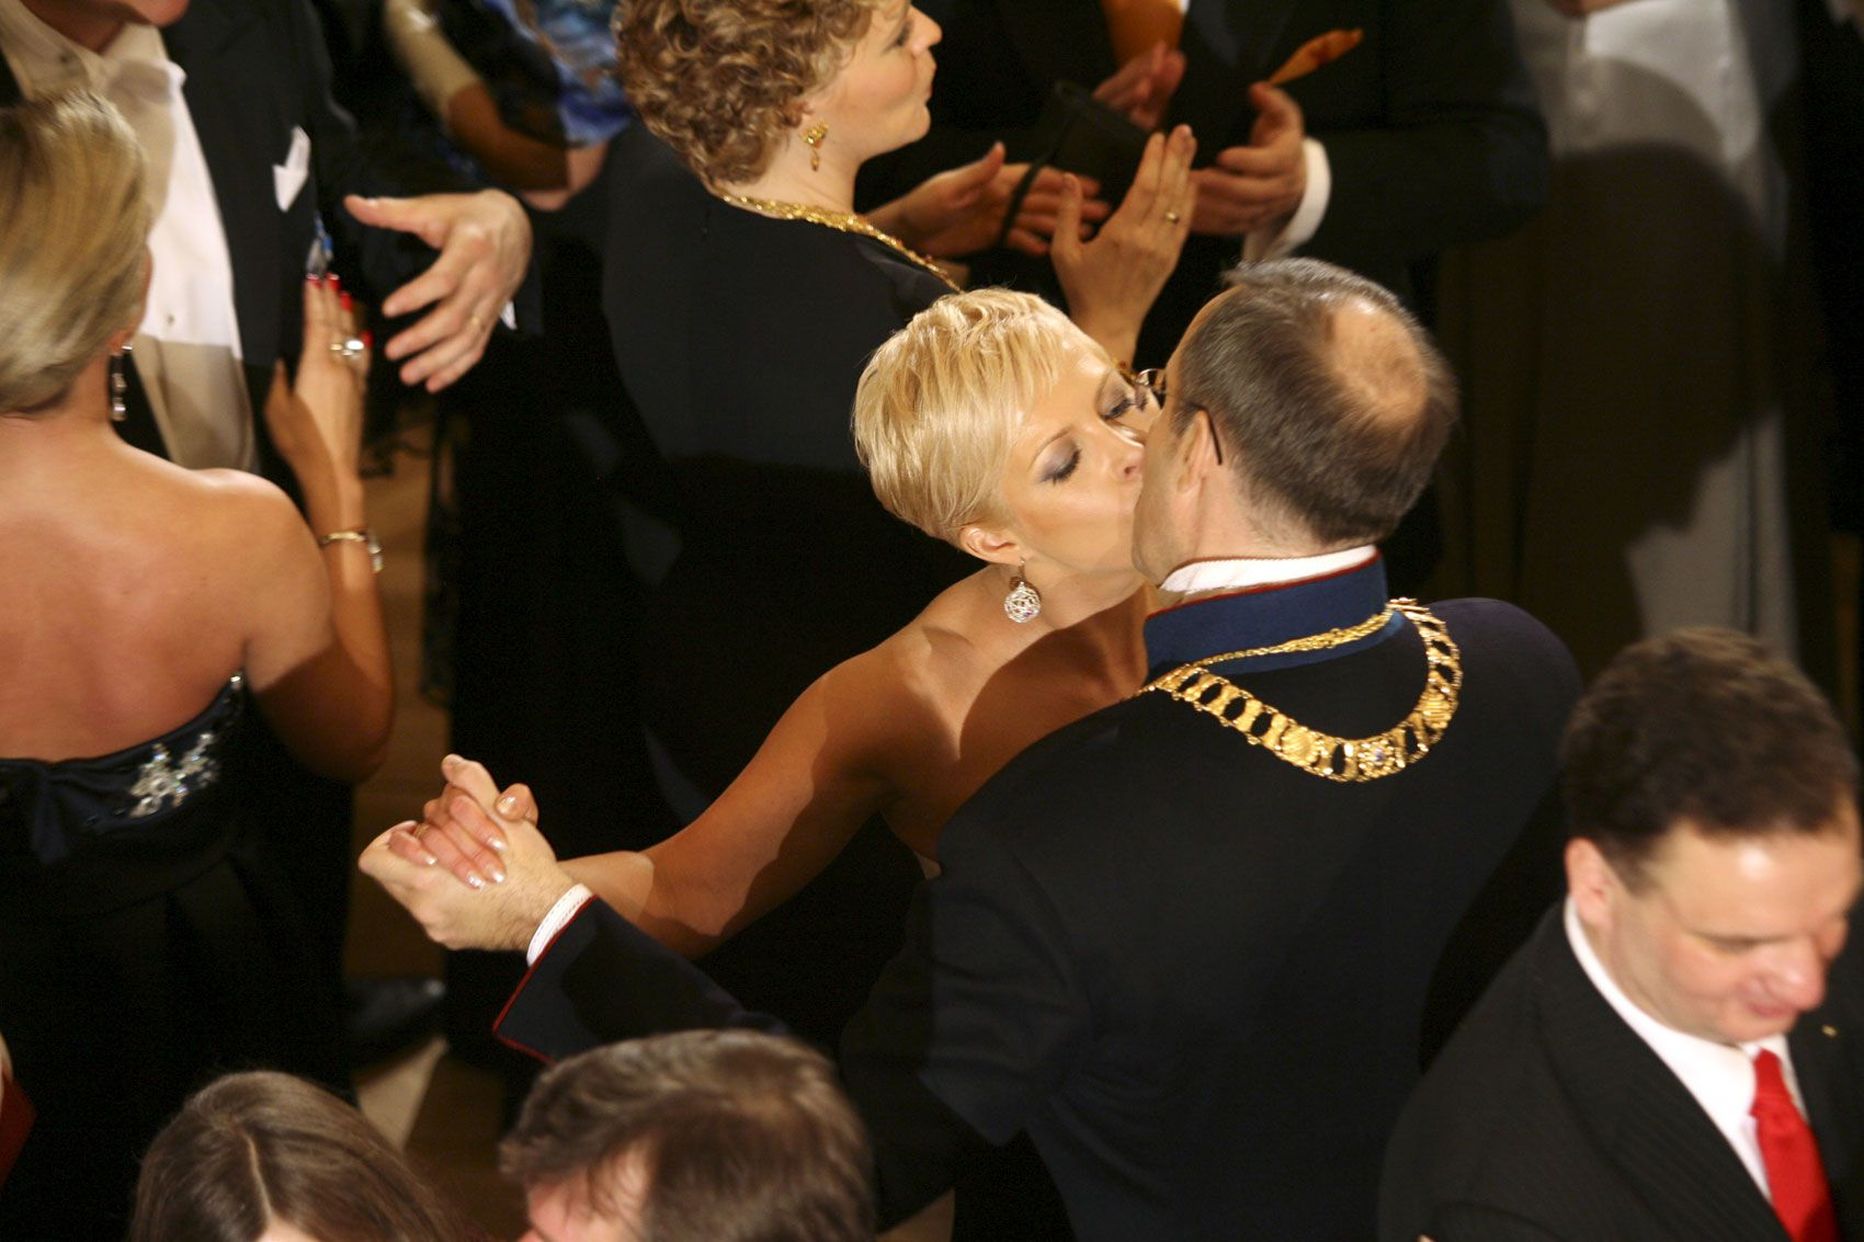 Õrnushetk headel aegadel: 2008. aasta vabariigi aastapäeva vastuvõtule järgnenud ballil keerutasid Evelin
ja Toomas Hendrik Ilves veel üheskoos jalga ning suudlesidki.